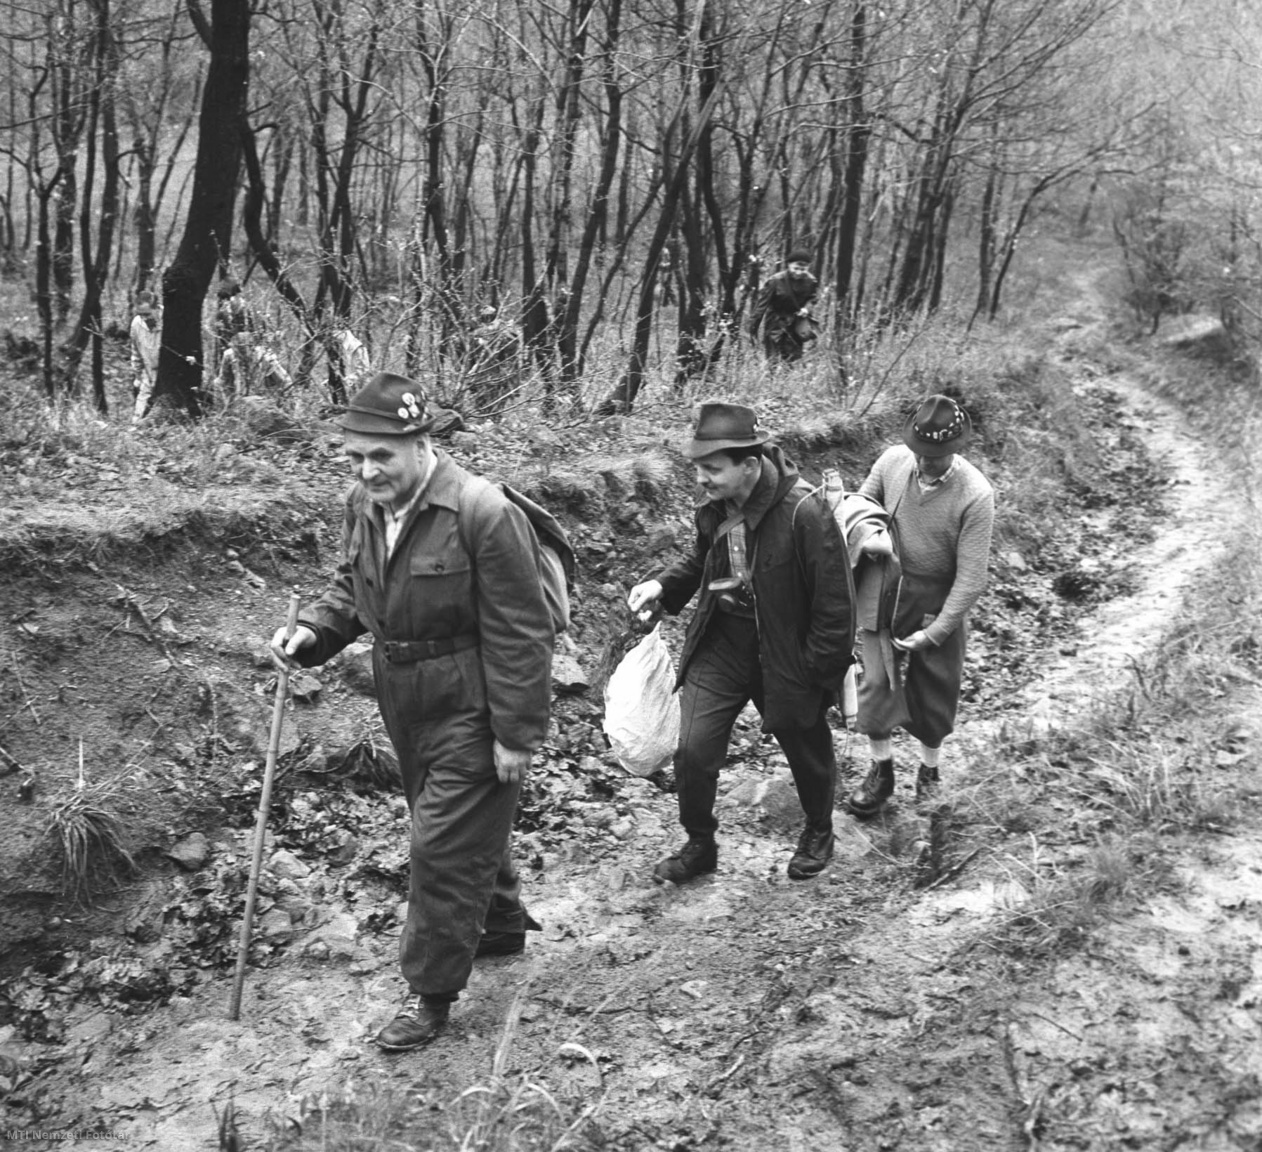 10 de abril de 1966. Octavo Senderismo en el Bosque de Peles.  Excursionistas en la zona.  La Sociedad Amiga de la Naturaleza de Budapest organizó la visita tradicional a Voroski Rock, cuyo propósito era que los excursionistas depositaran una ofrenda floral en el monumento soviético.